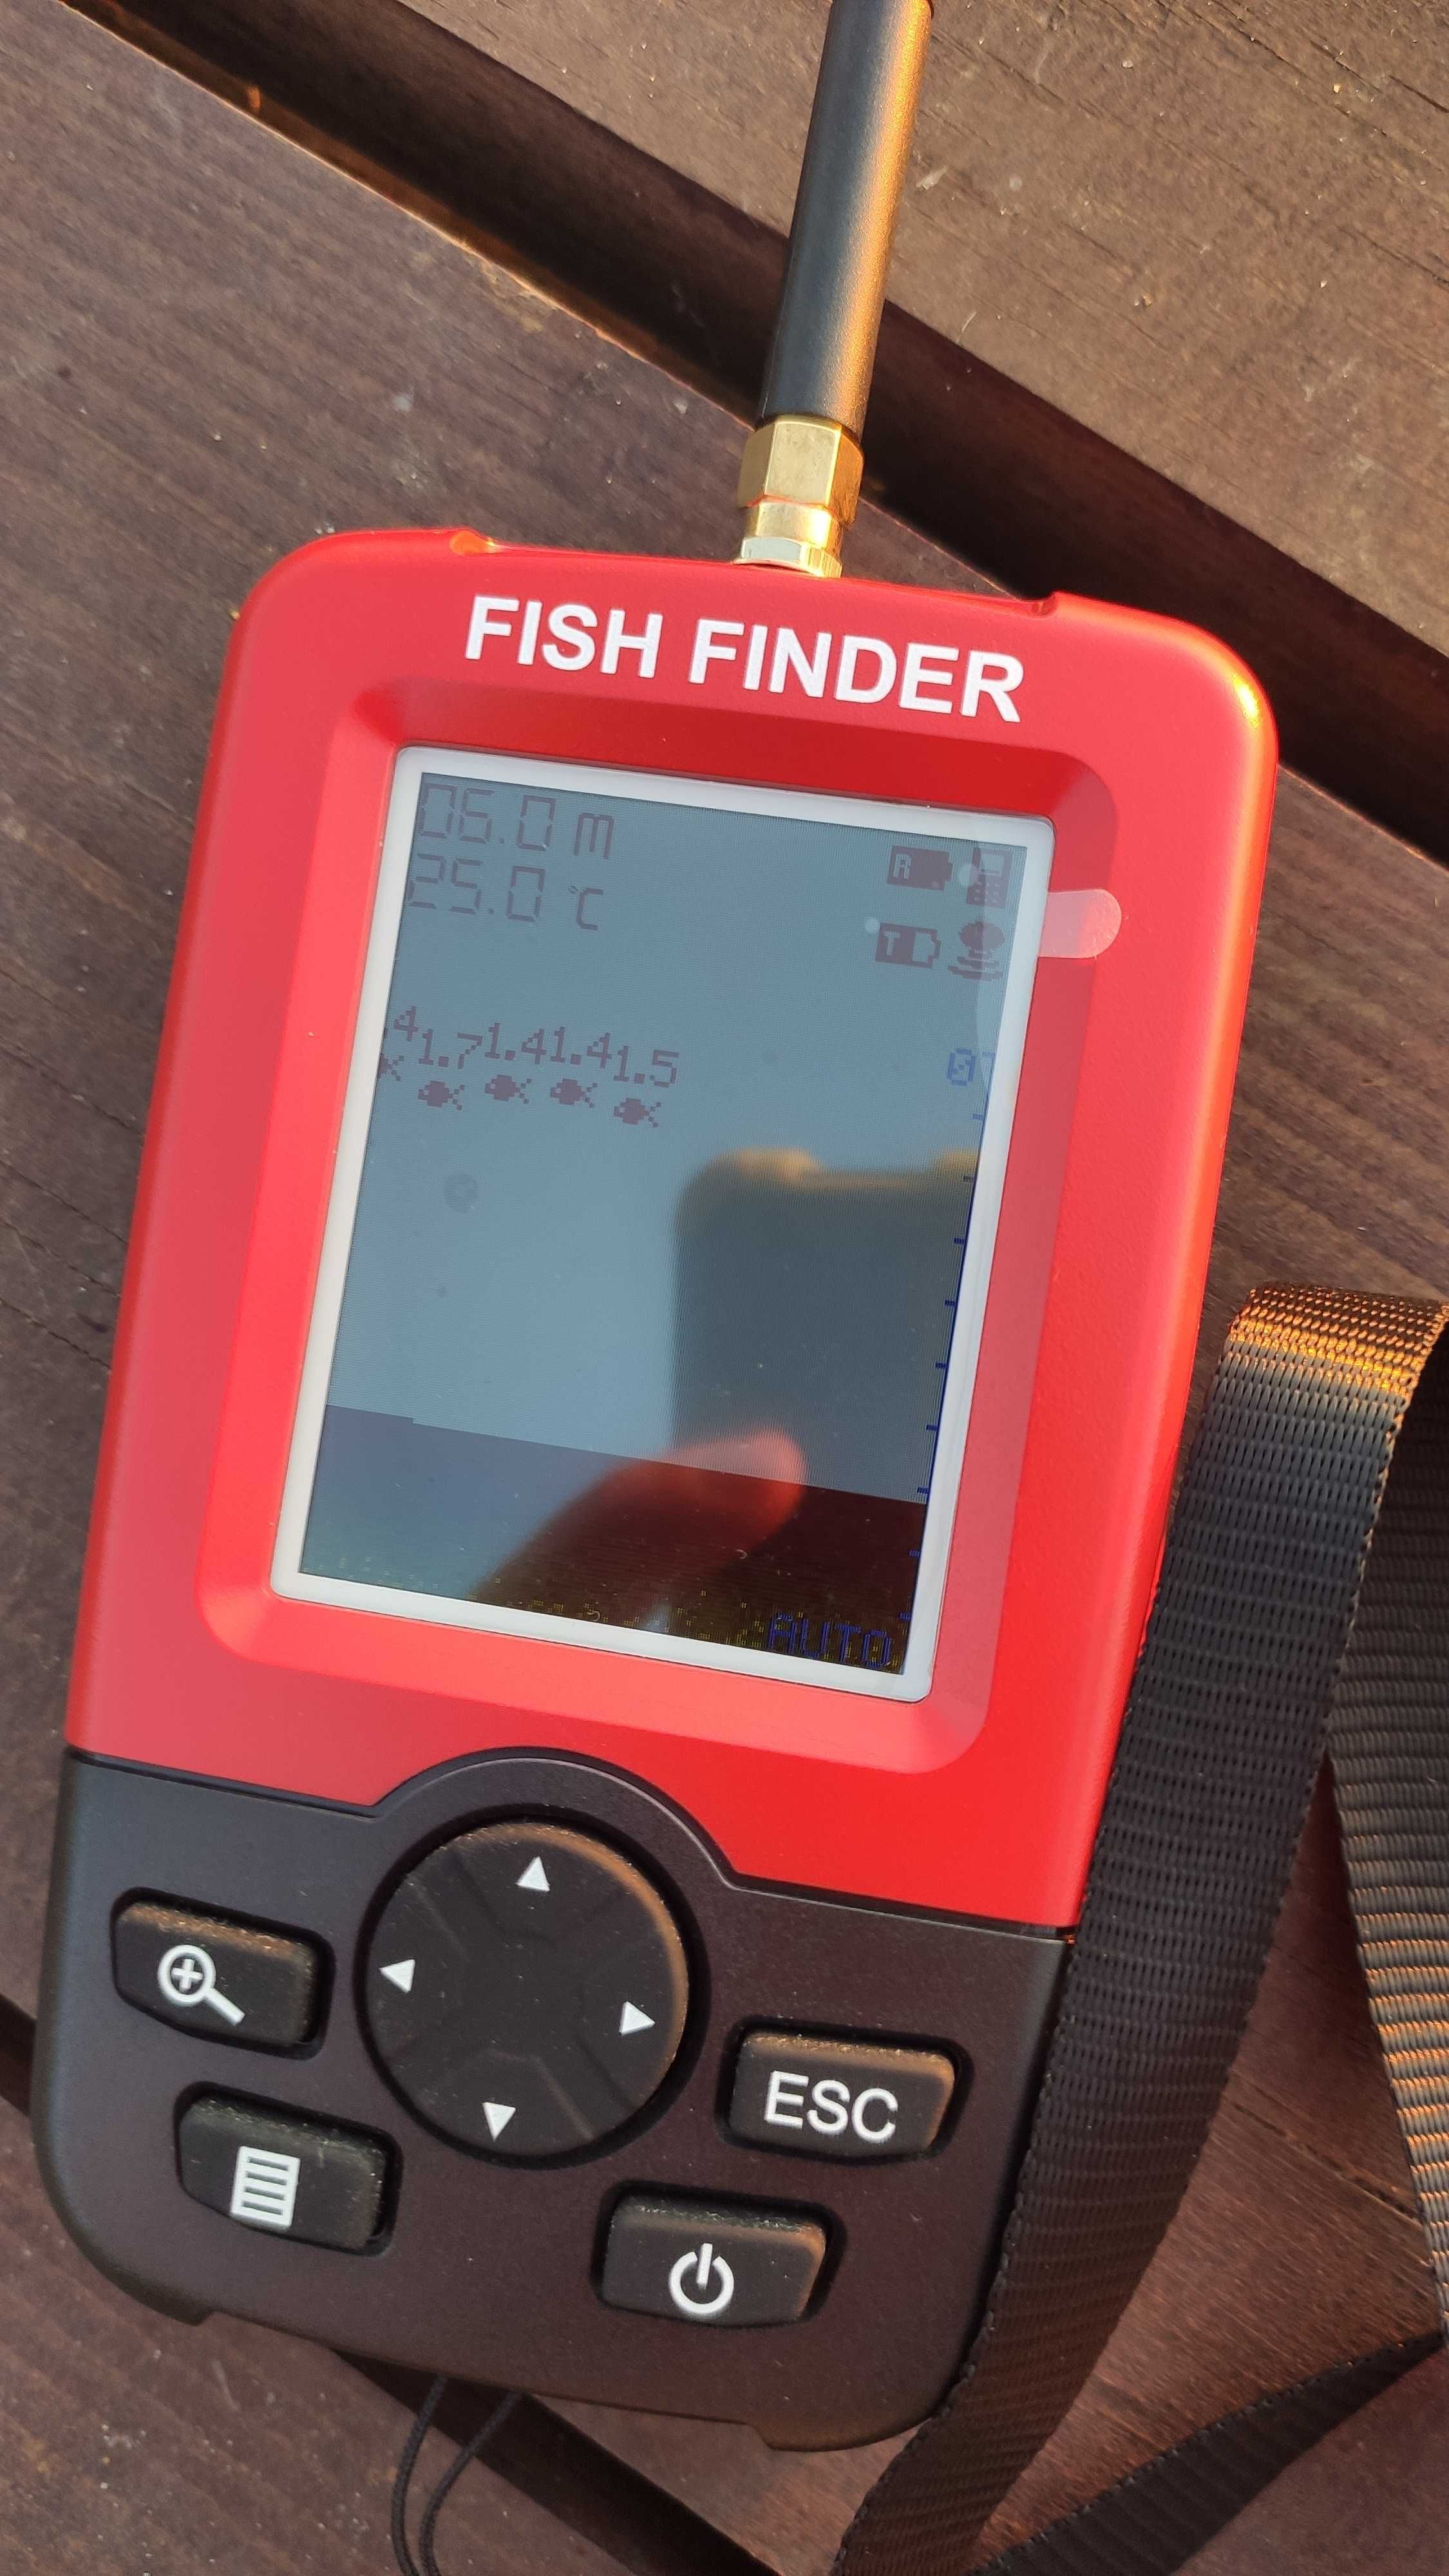 Качественный беспроводной эхолот FishFinder. Состояние - как новый.